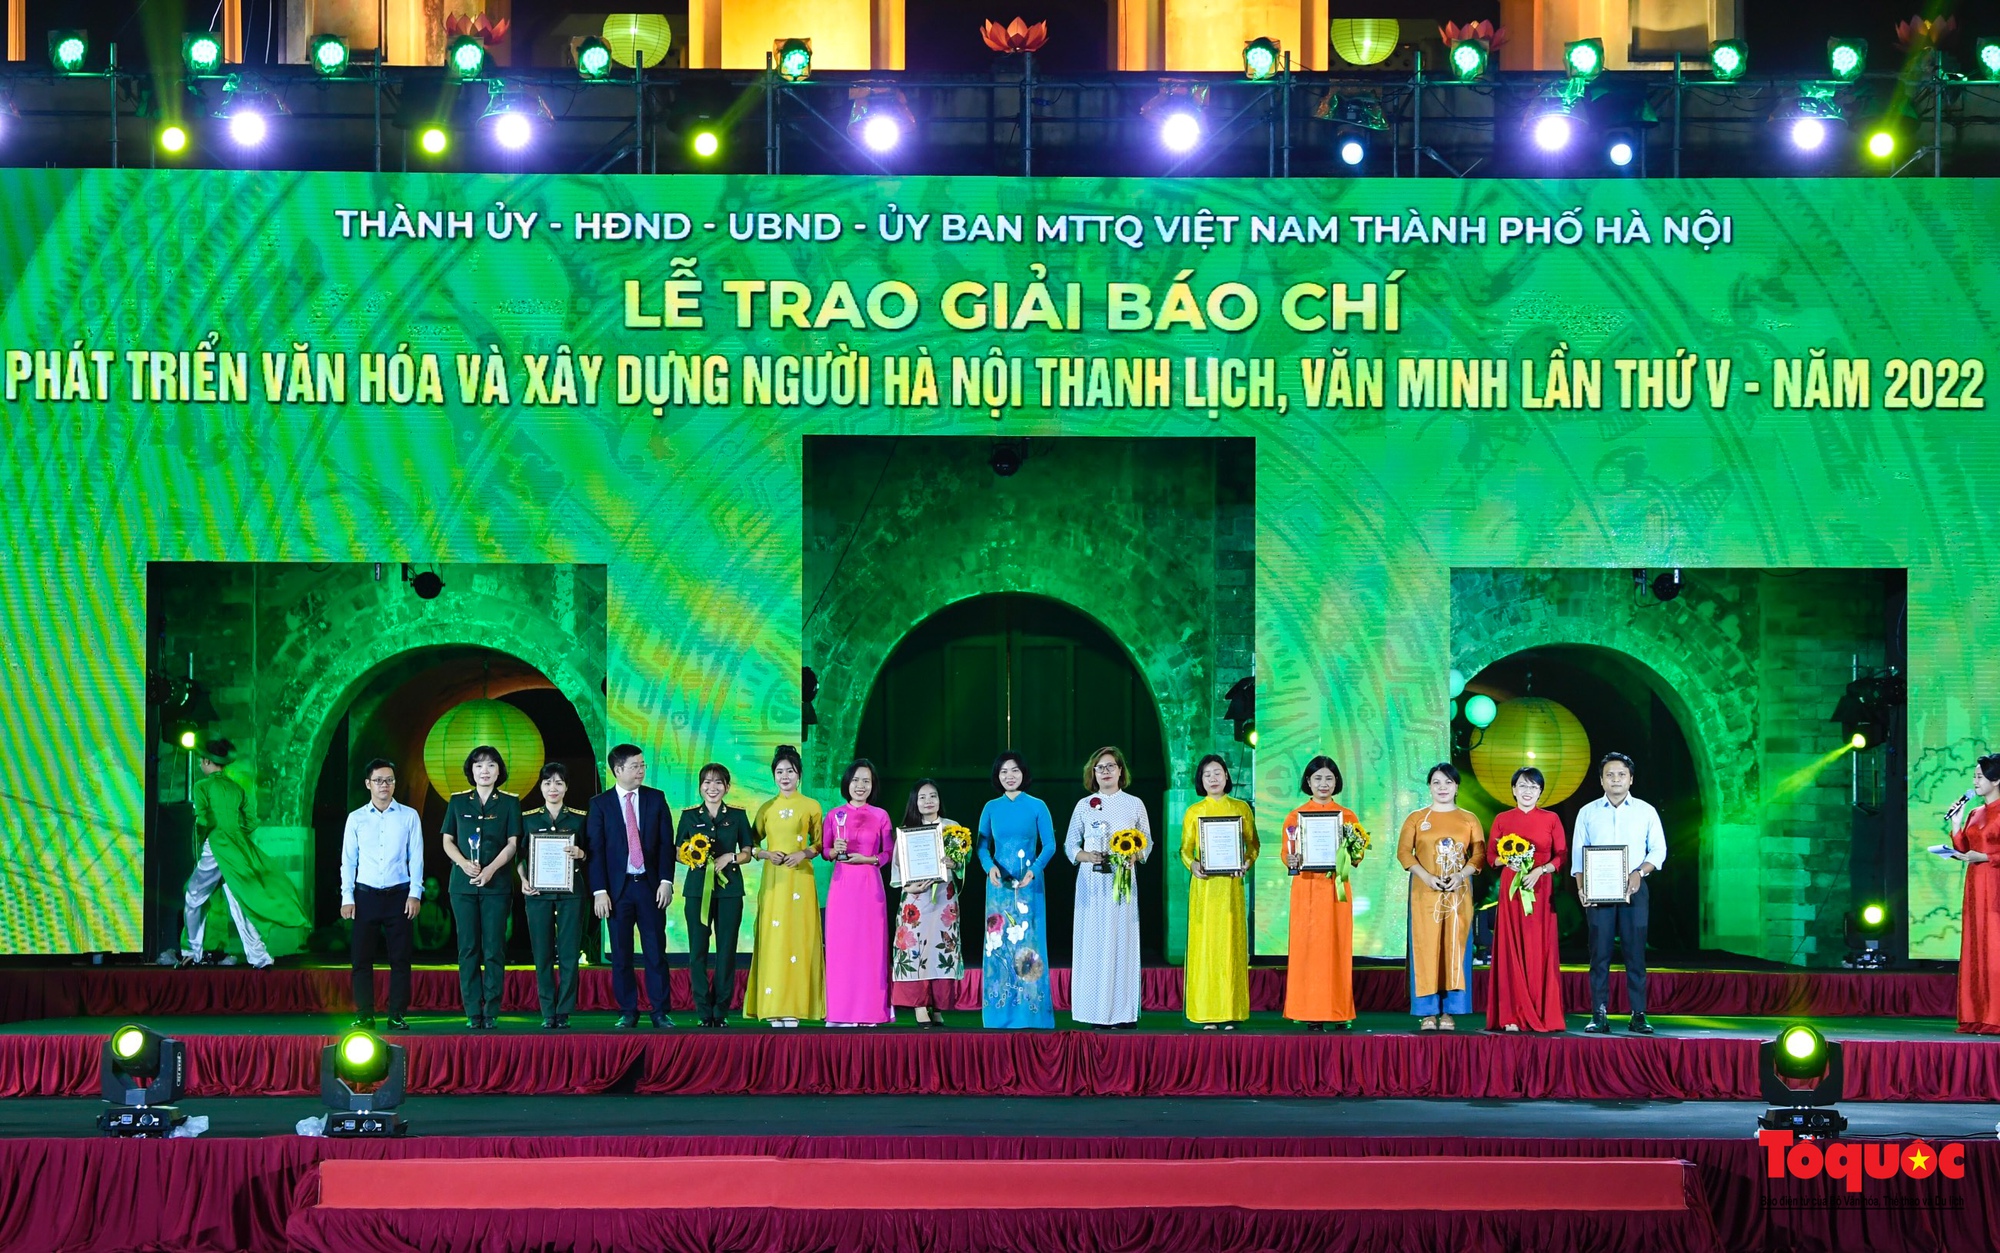 Chùm ảnh: Lễ trao Giải báo chí về phát triển văn hóa và xây dựng người Hà Nội thanh lịch, văn minh lần thứ V - năm 2022 - Ảnh 5.